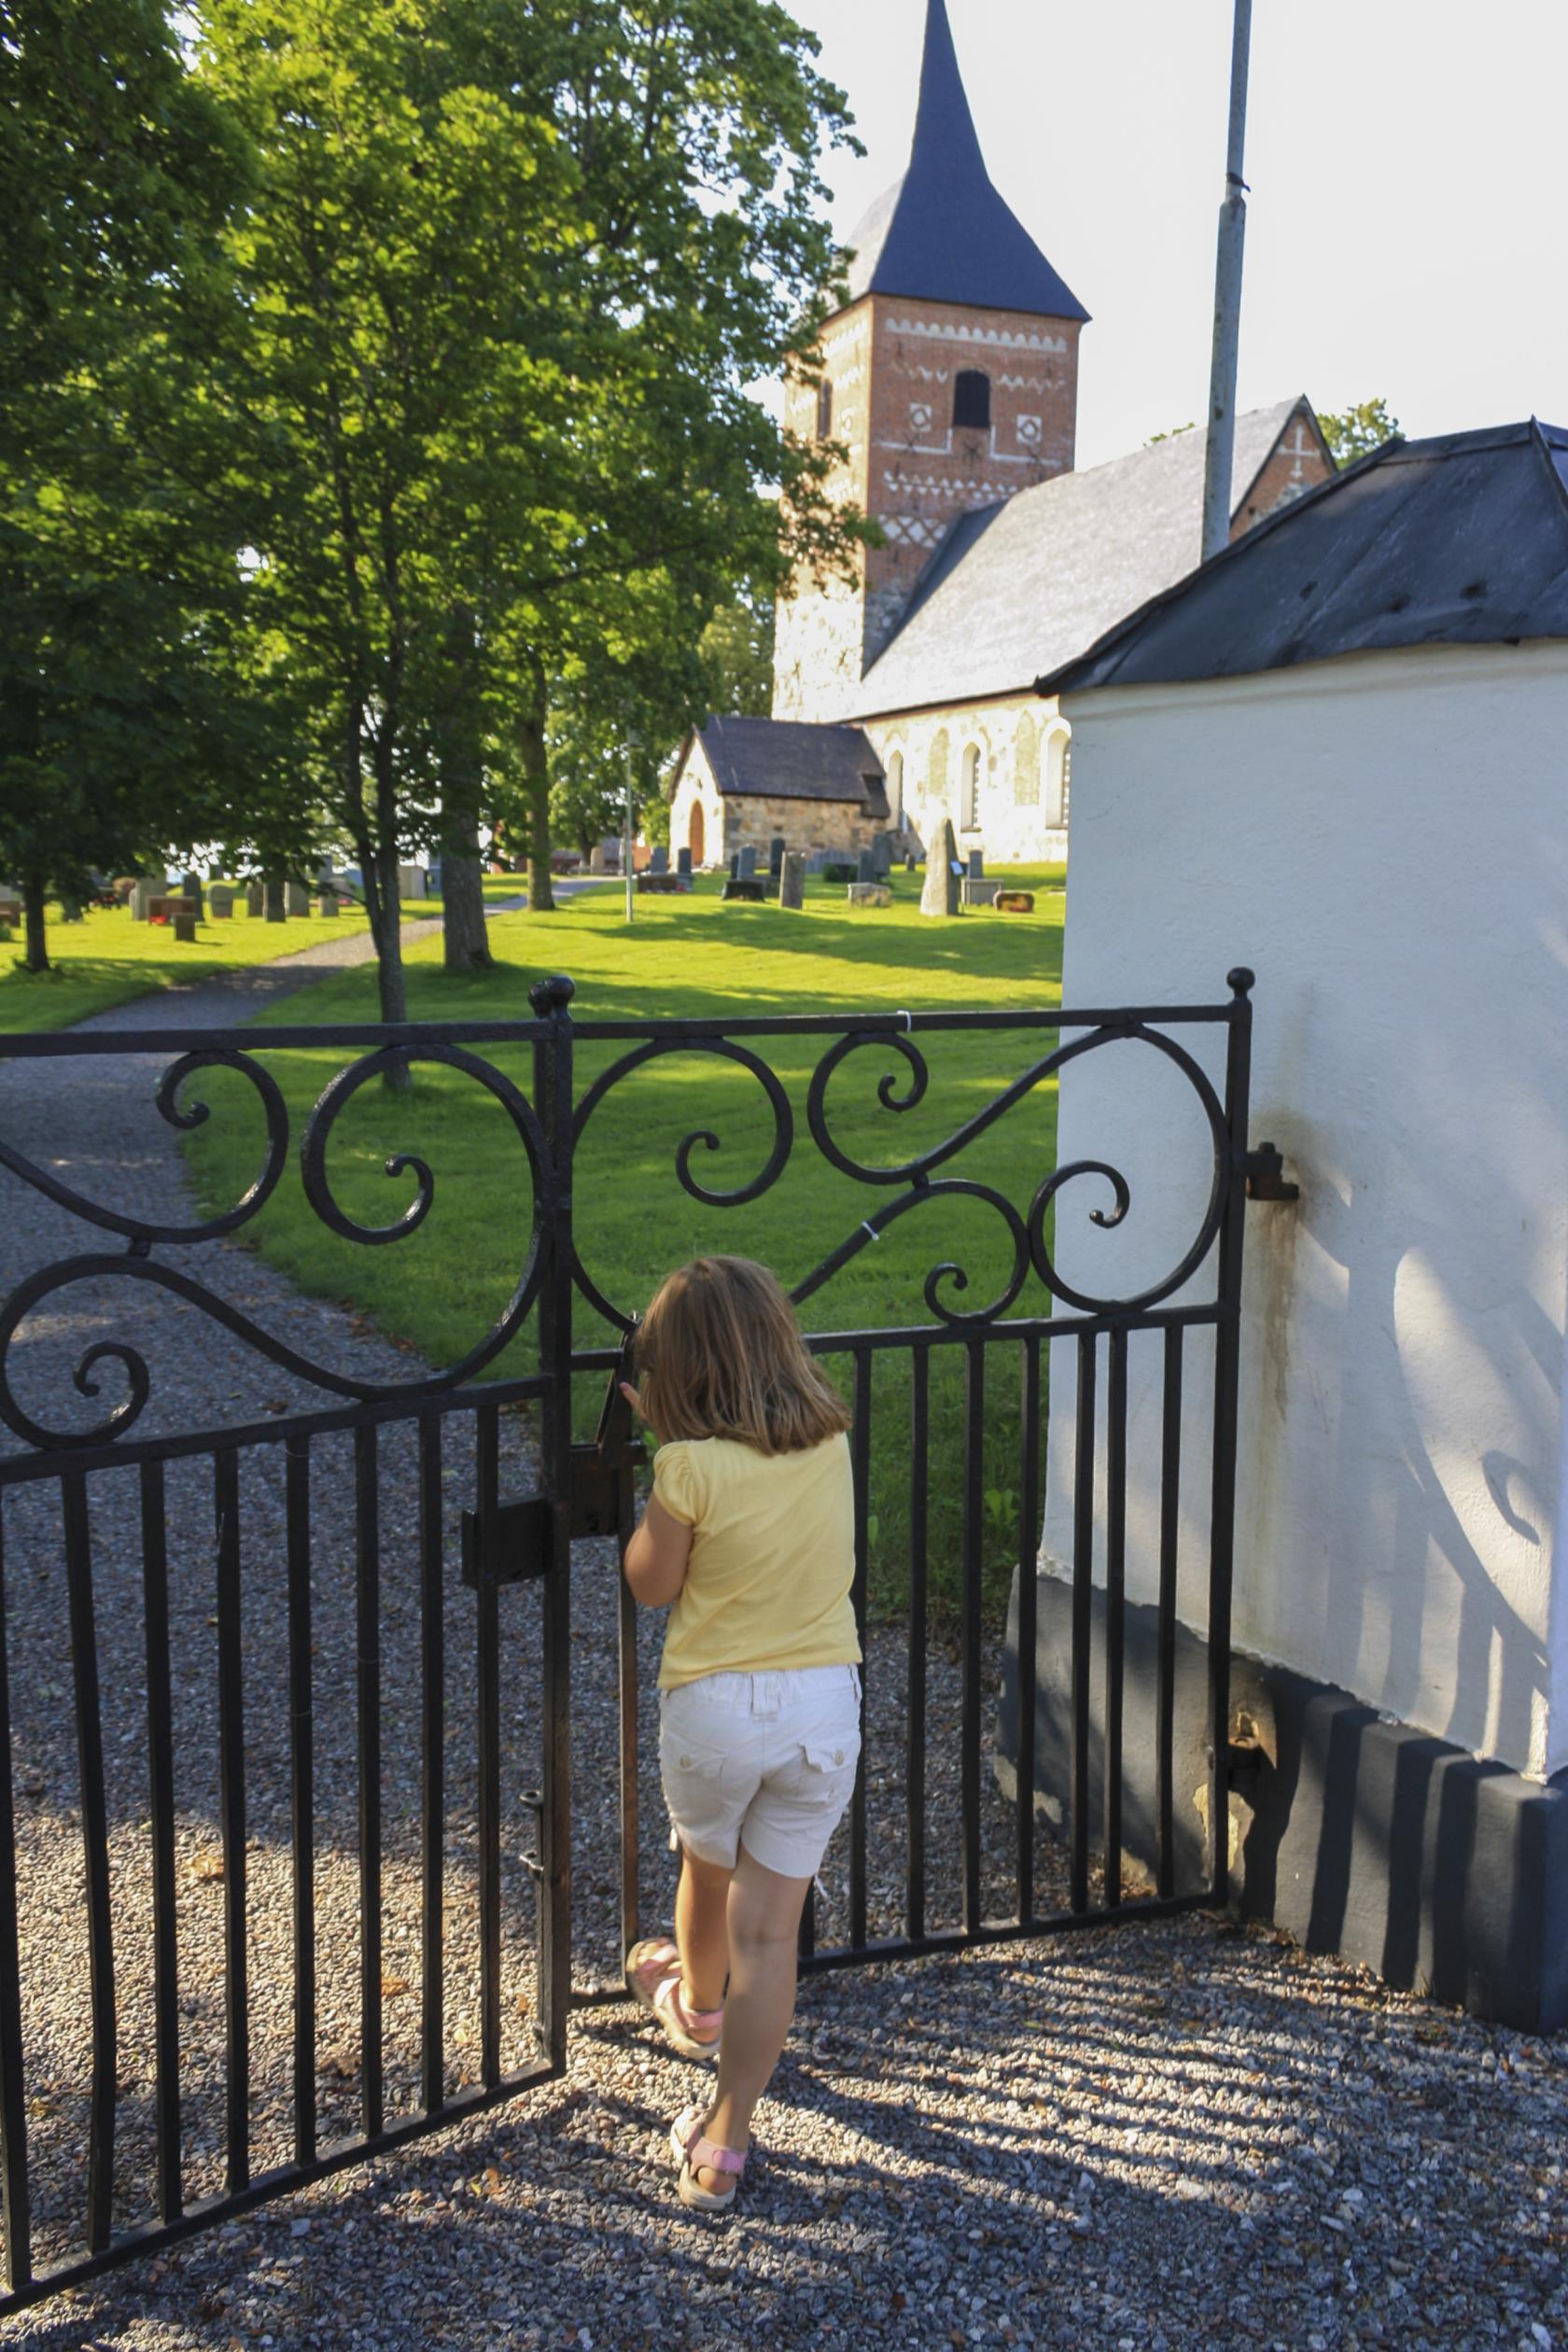 Ett litet barn öppnar järngrinden in till en kyrkogård med en kyrka i sten och rött tegel.